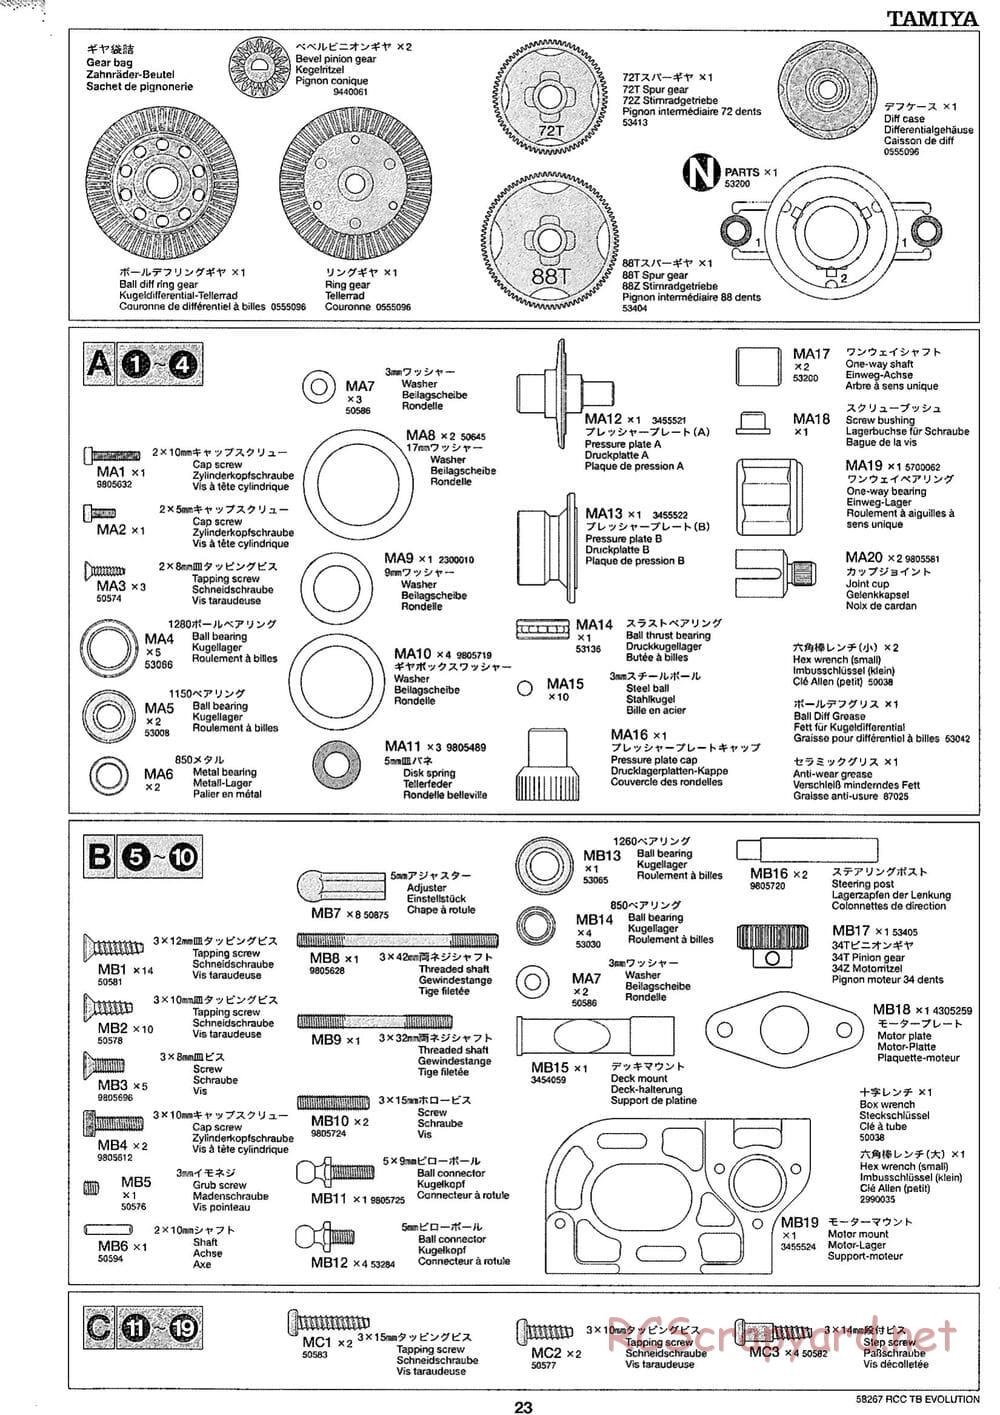 Tamiya - TB Evolution Chassis - Manual - Page 23